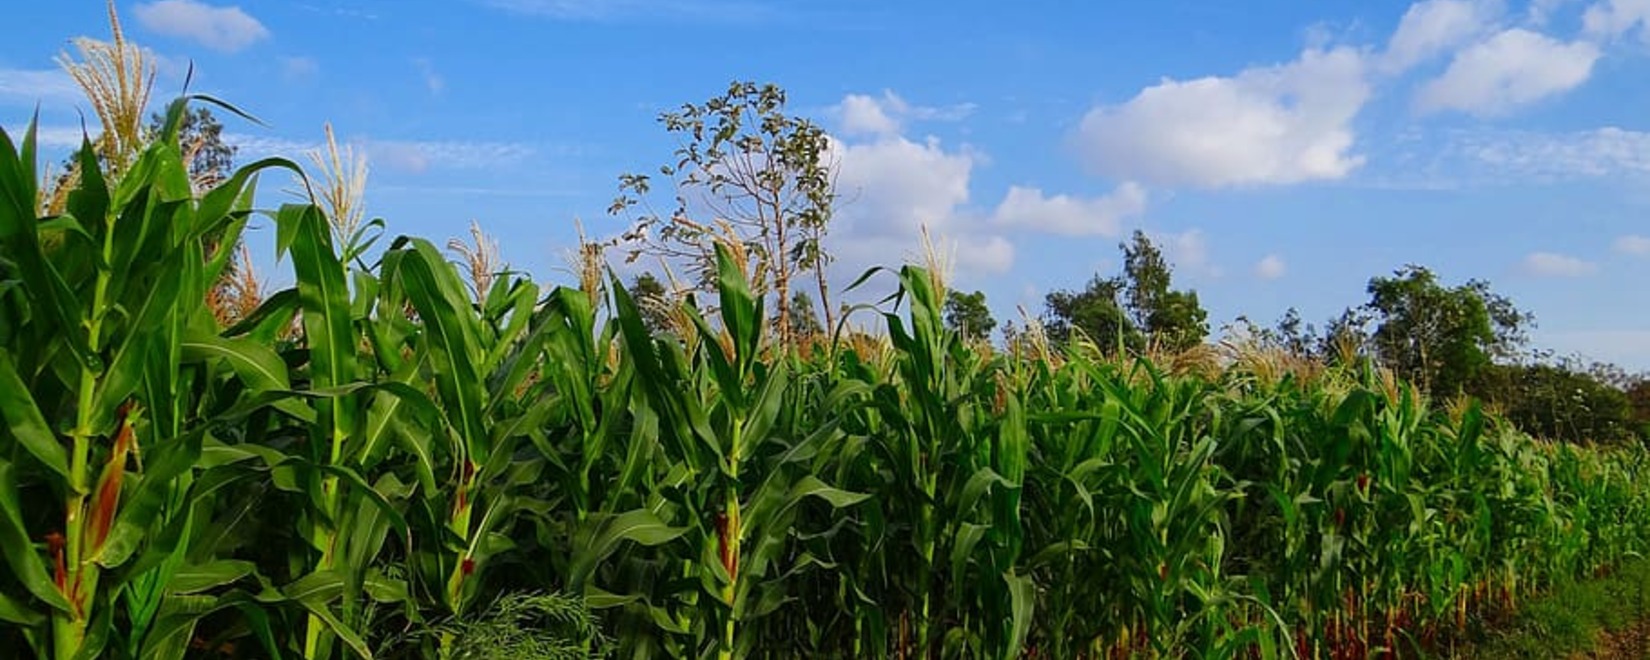 Бразилия продолжает лидировать в поставках кукурузы в Китай